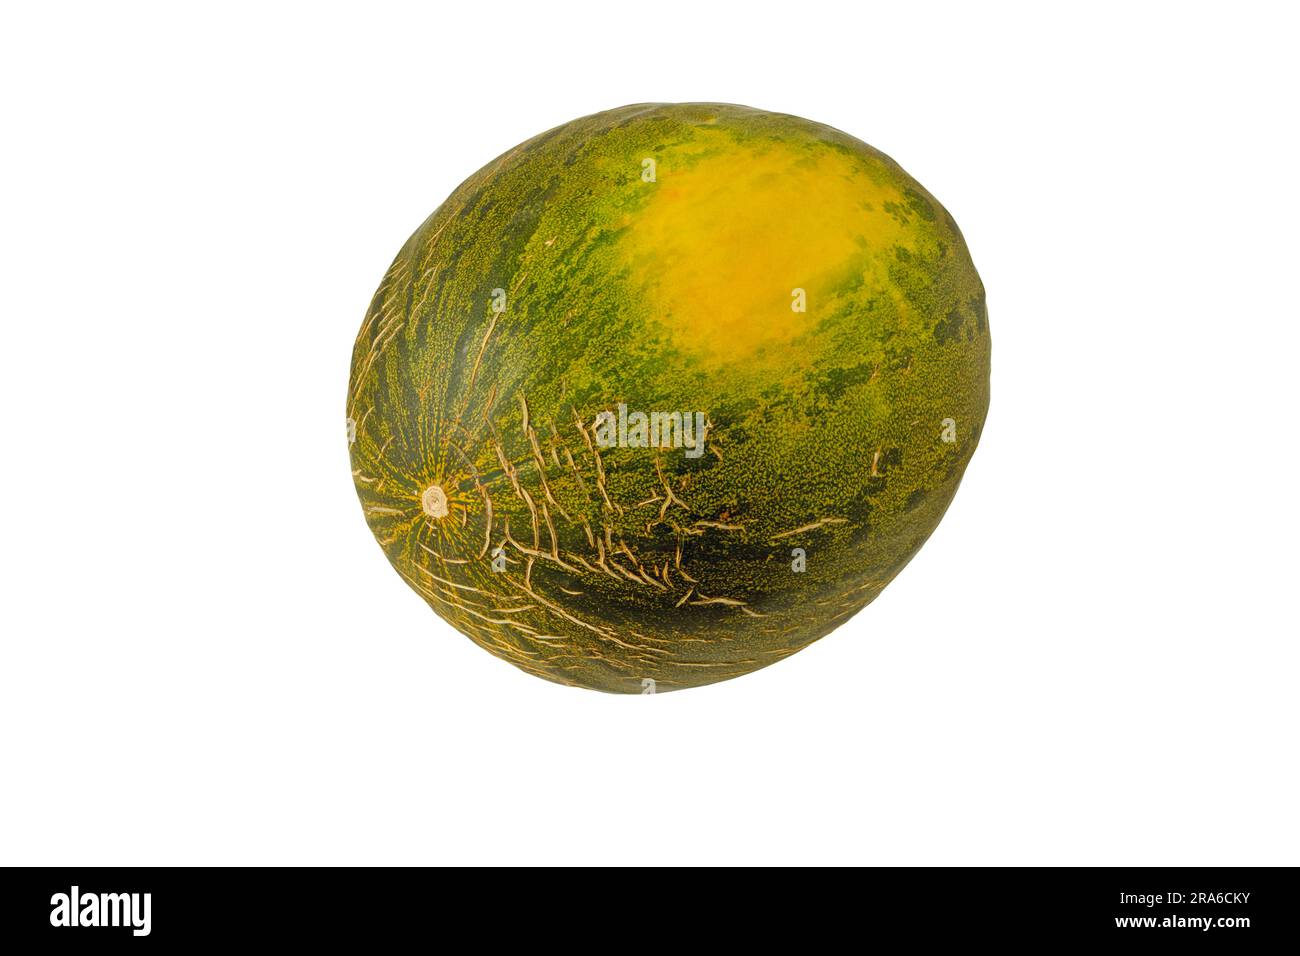 Melone intero dolce maturo con pelle incrinata isolata su bianco. Cucumis melo frutto di pepo verde scuro con macchia gialla. Foto Stock